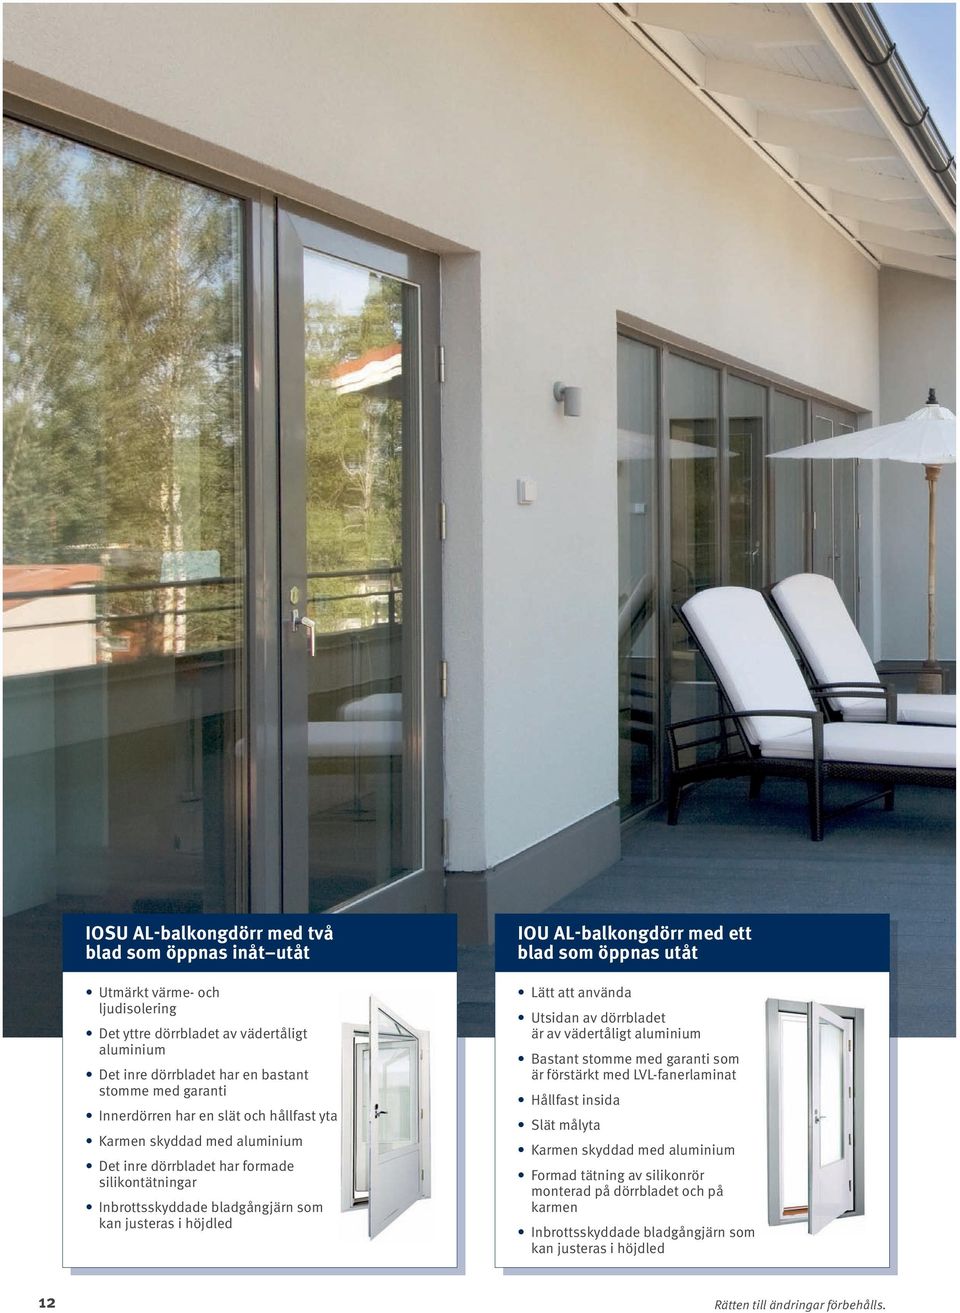 AL-balkongdörr med ett blad som öppnas utåt Lätt att använda Utsidan av dörrbladet är av vädertåligt aluminium Bastant stomme med garanti som är förstärkt med LVL fanerlaminat Hållfast